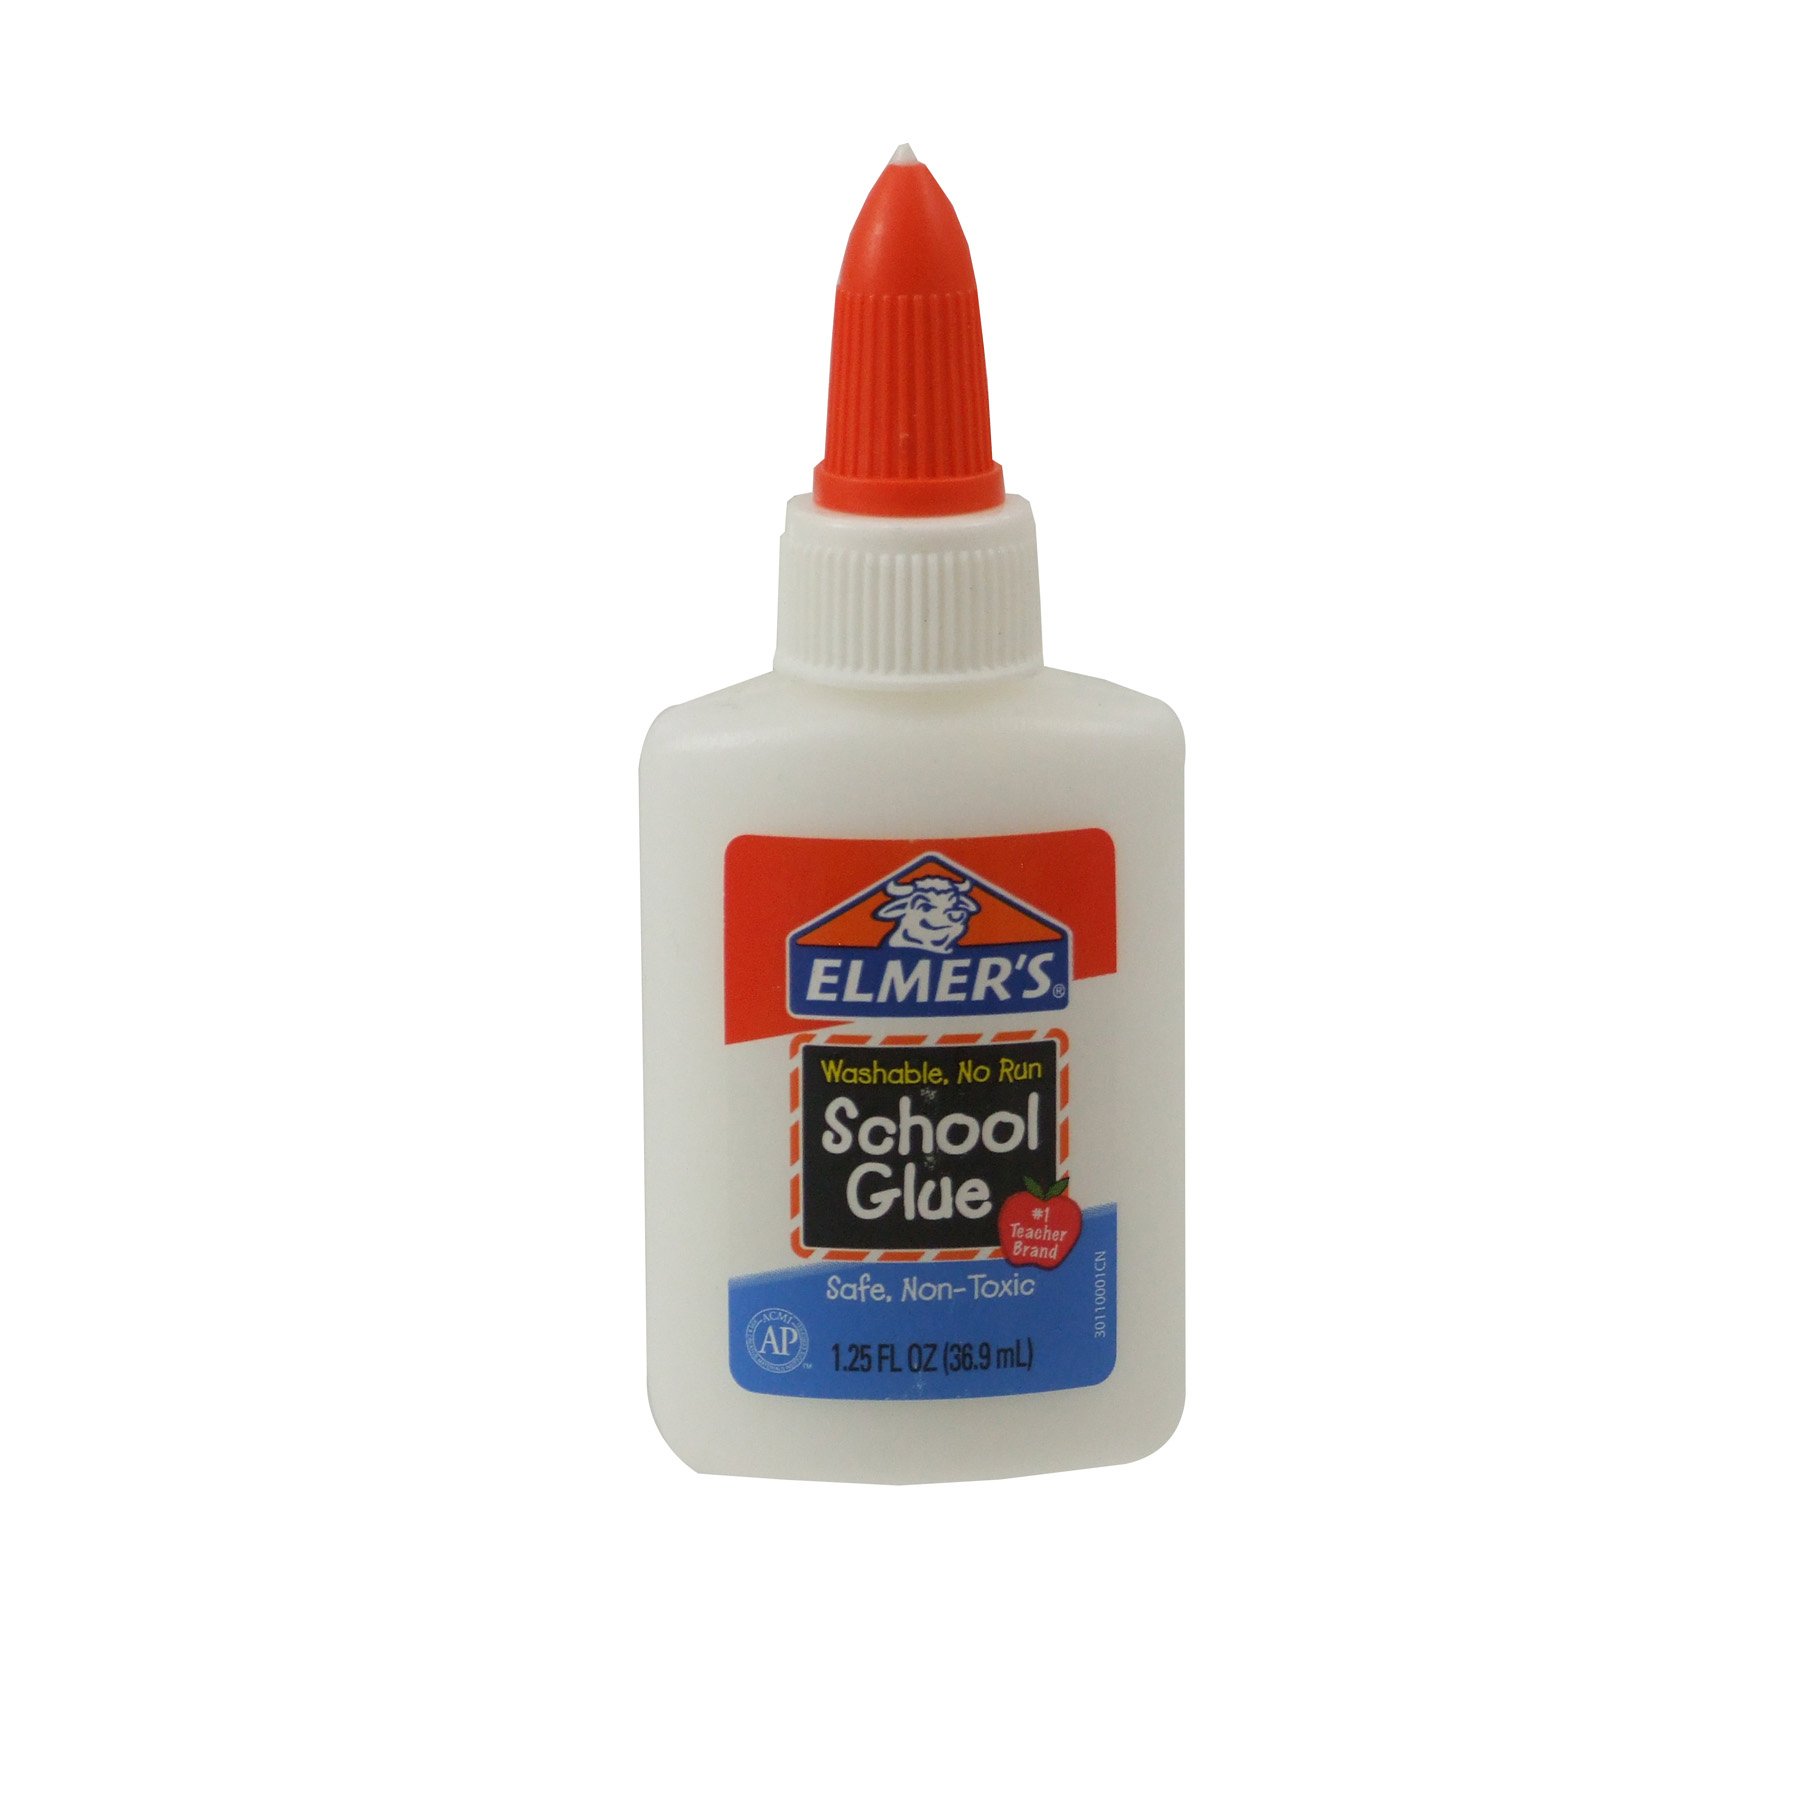  School Smart White School Glue, 1 Gal Bottle, White :  Learning: Classroom